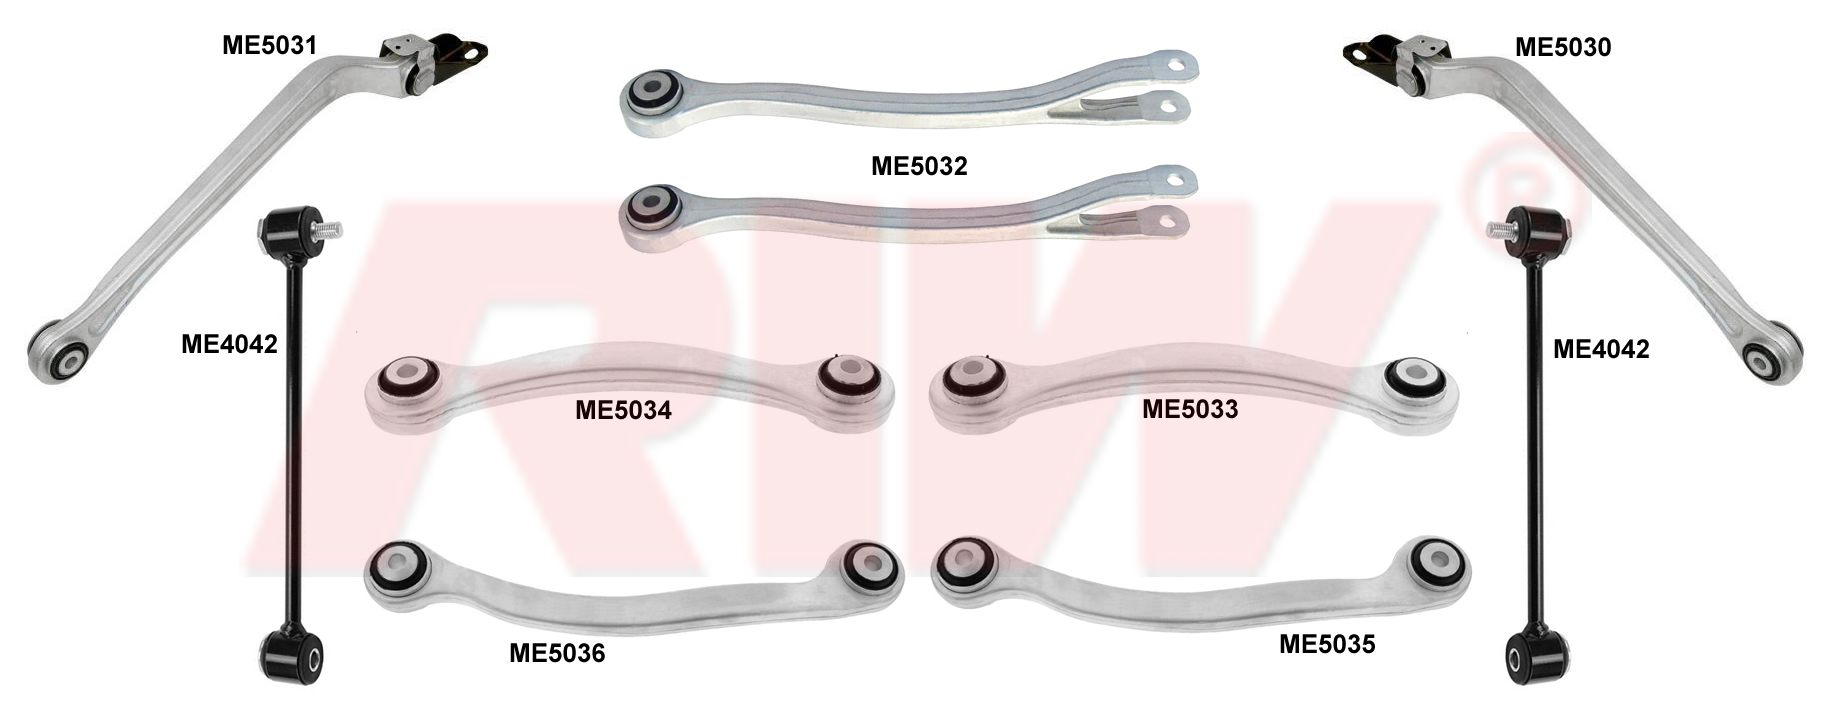 MERCEDES E CLASS (W211) 2003 - 2009 Repair Kit